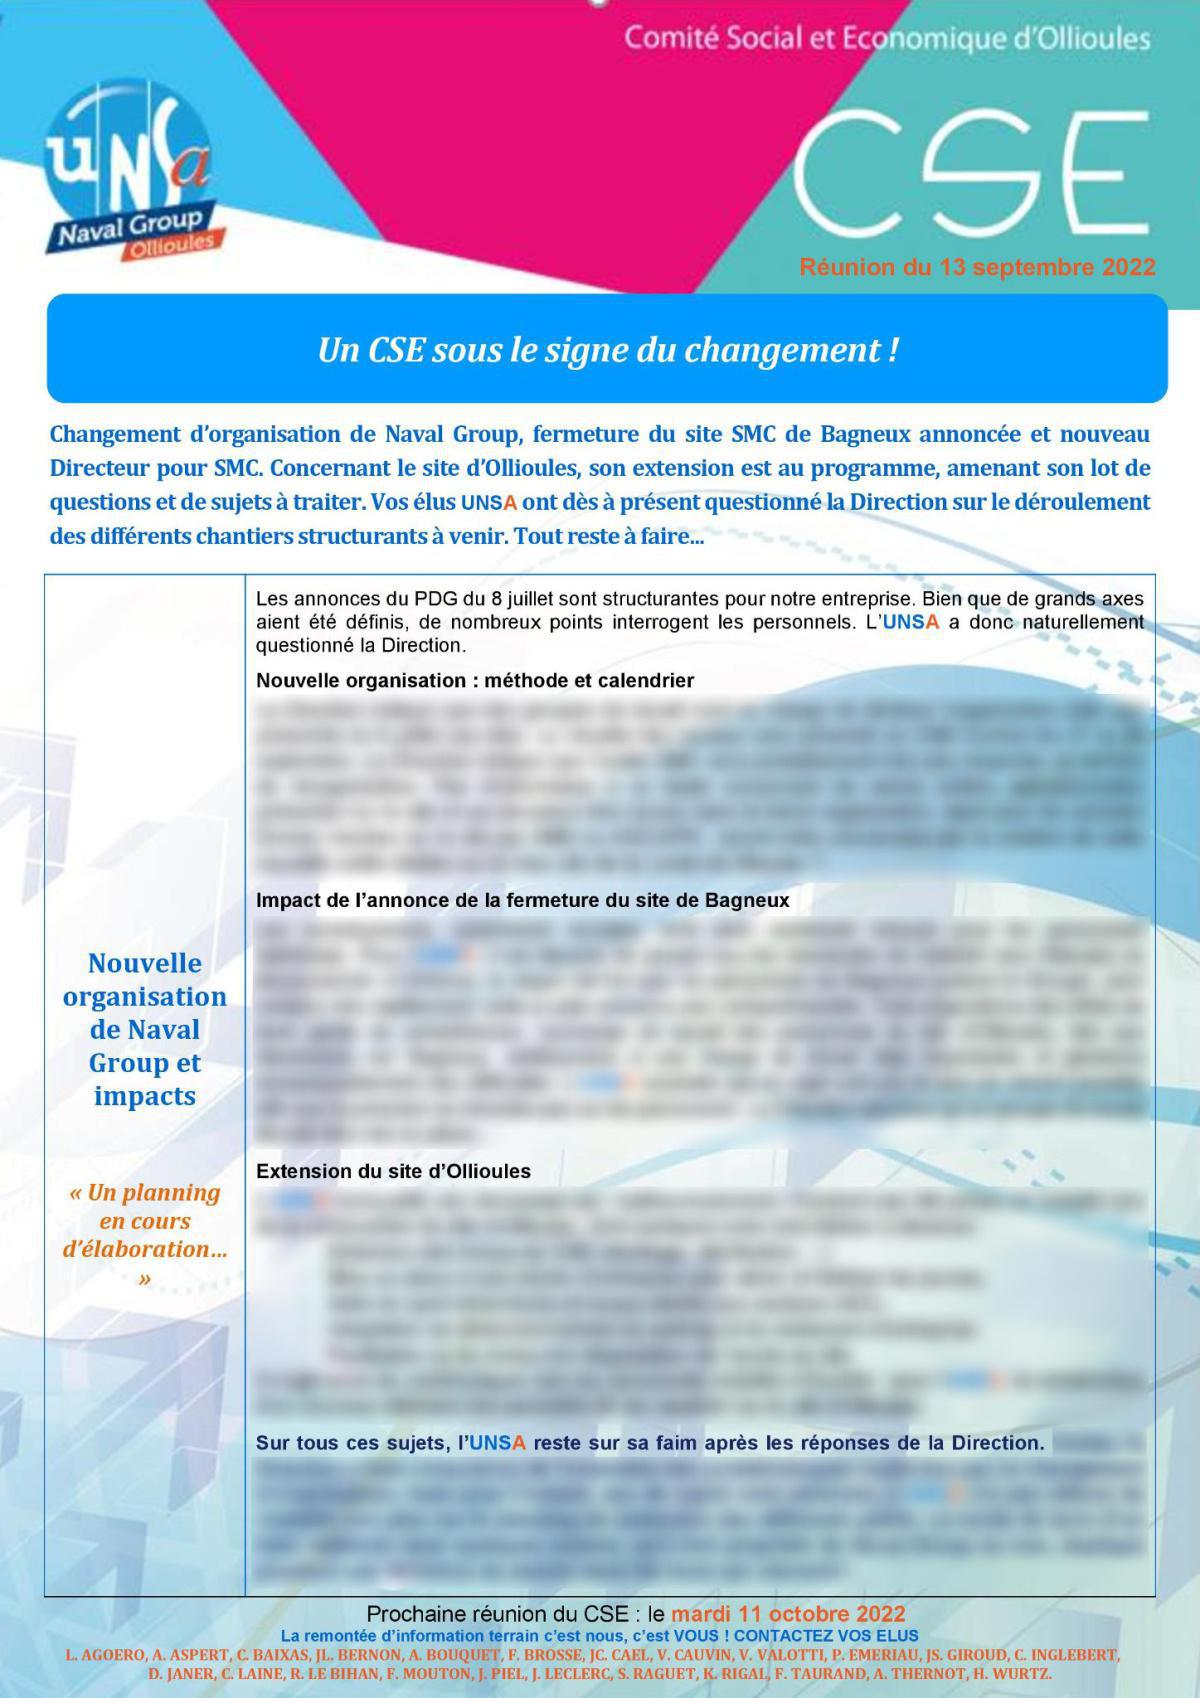 CSE d'Ollioules - Réunion du 13 septembre 2022 - Compte rendu